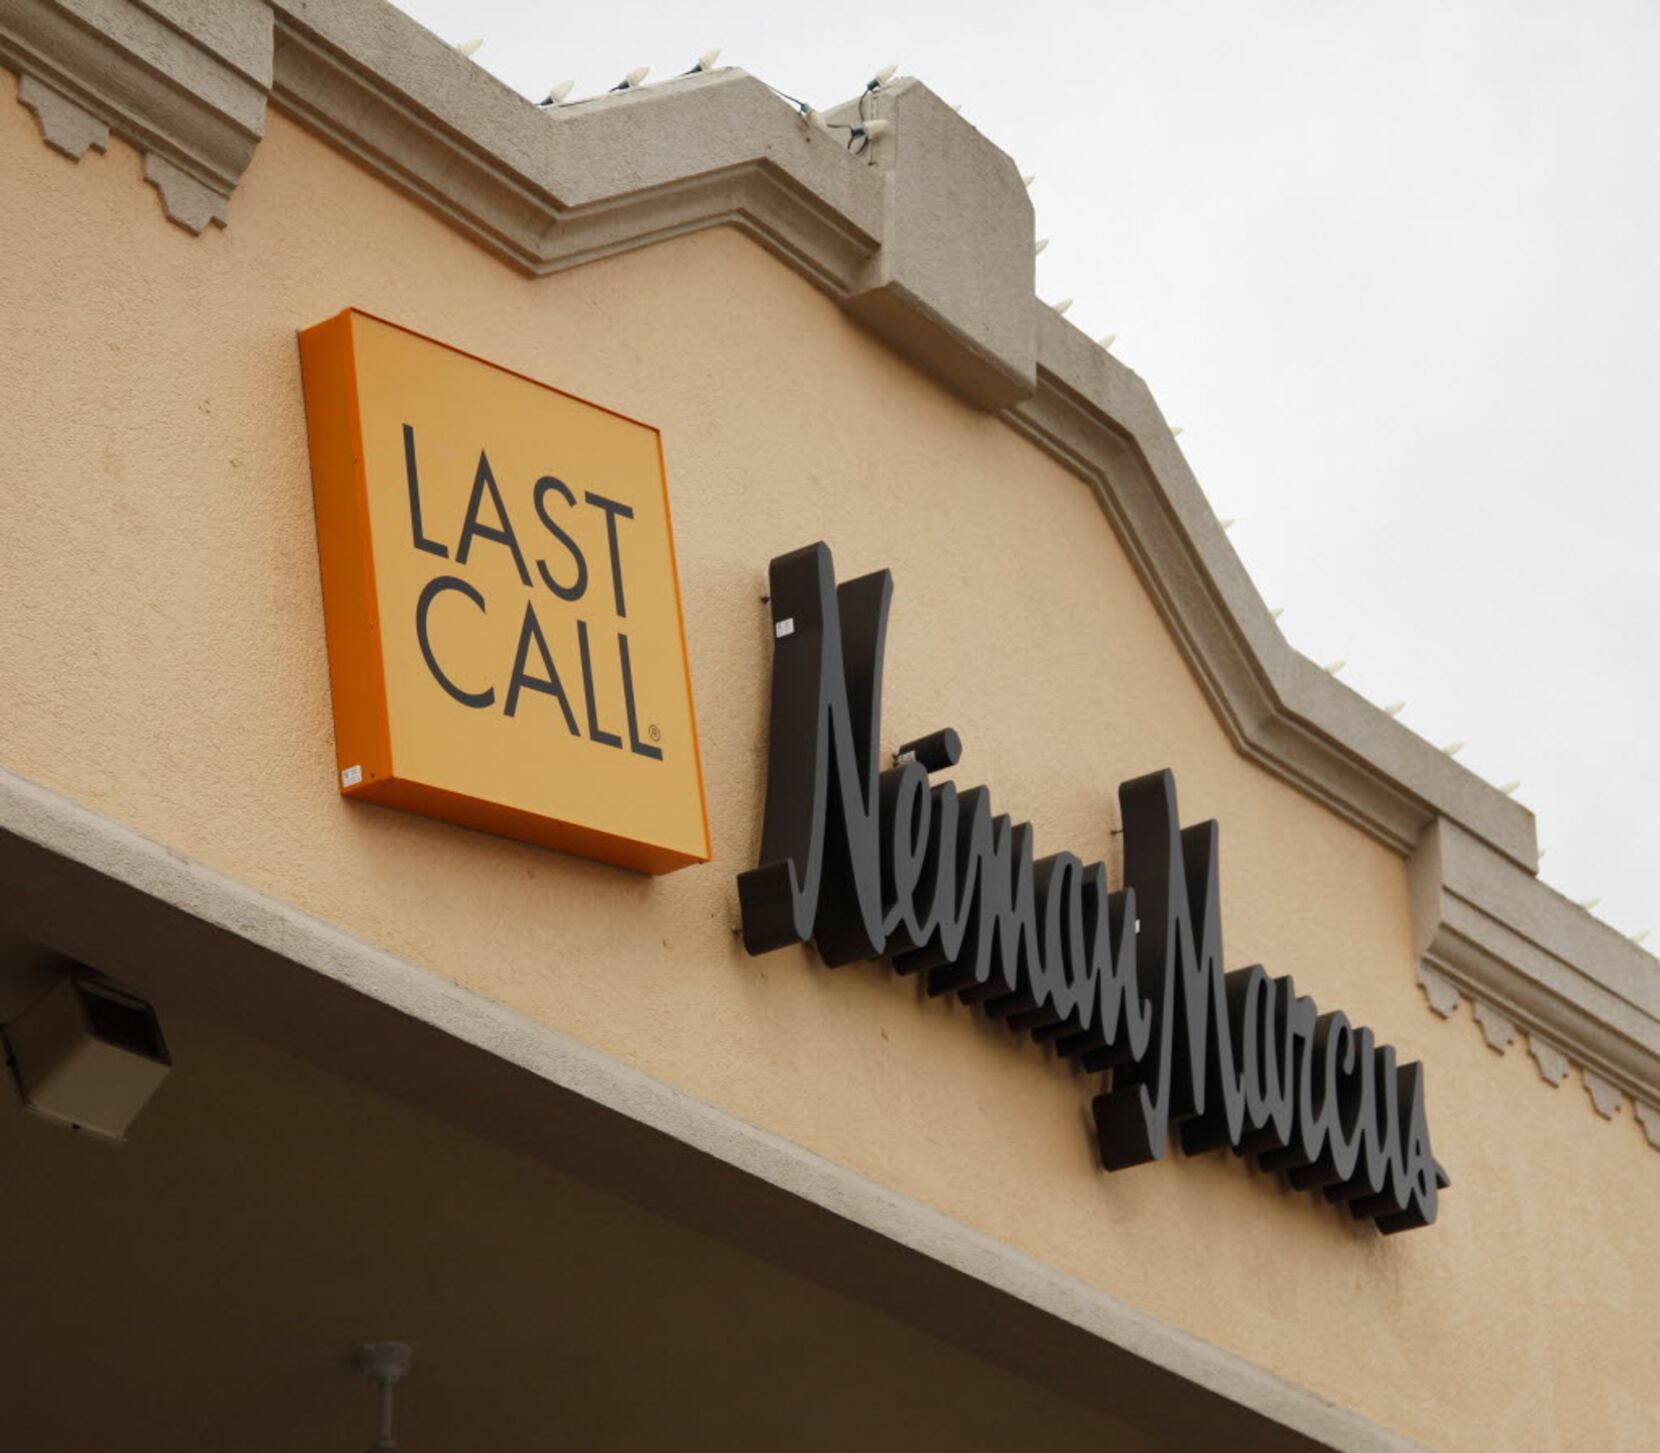 Neiman Marcus Opens Last Call Studio Store in Brooklyn – Sourcing